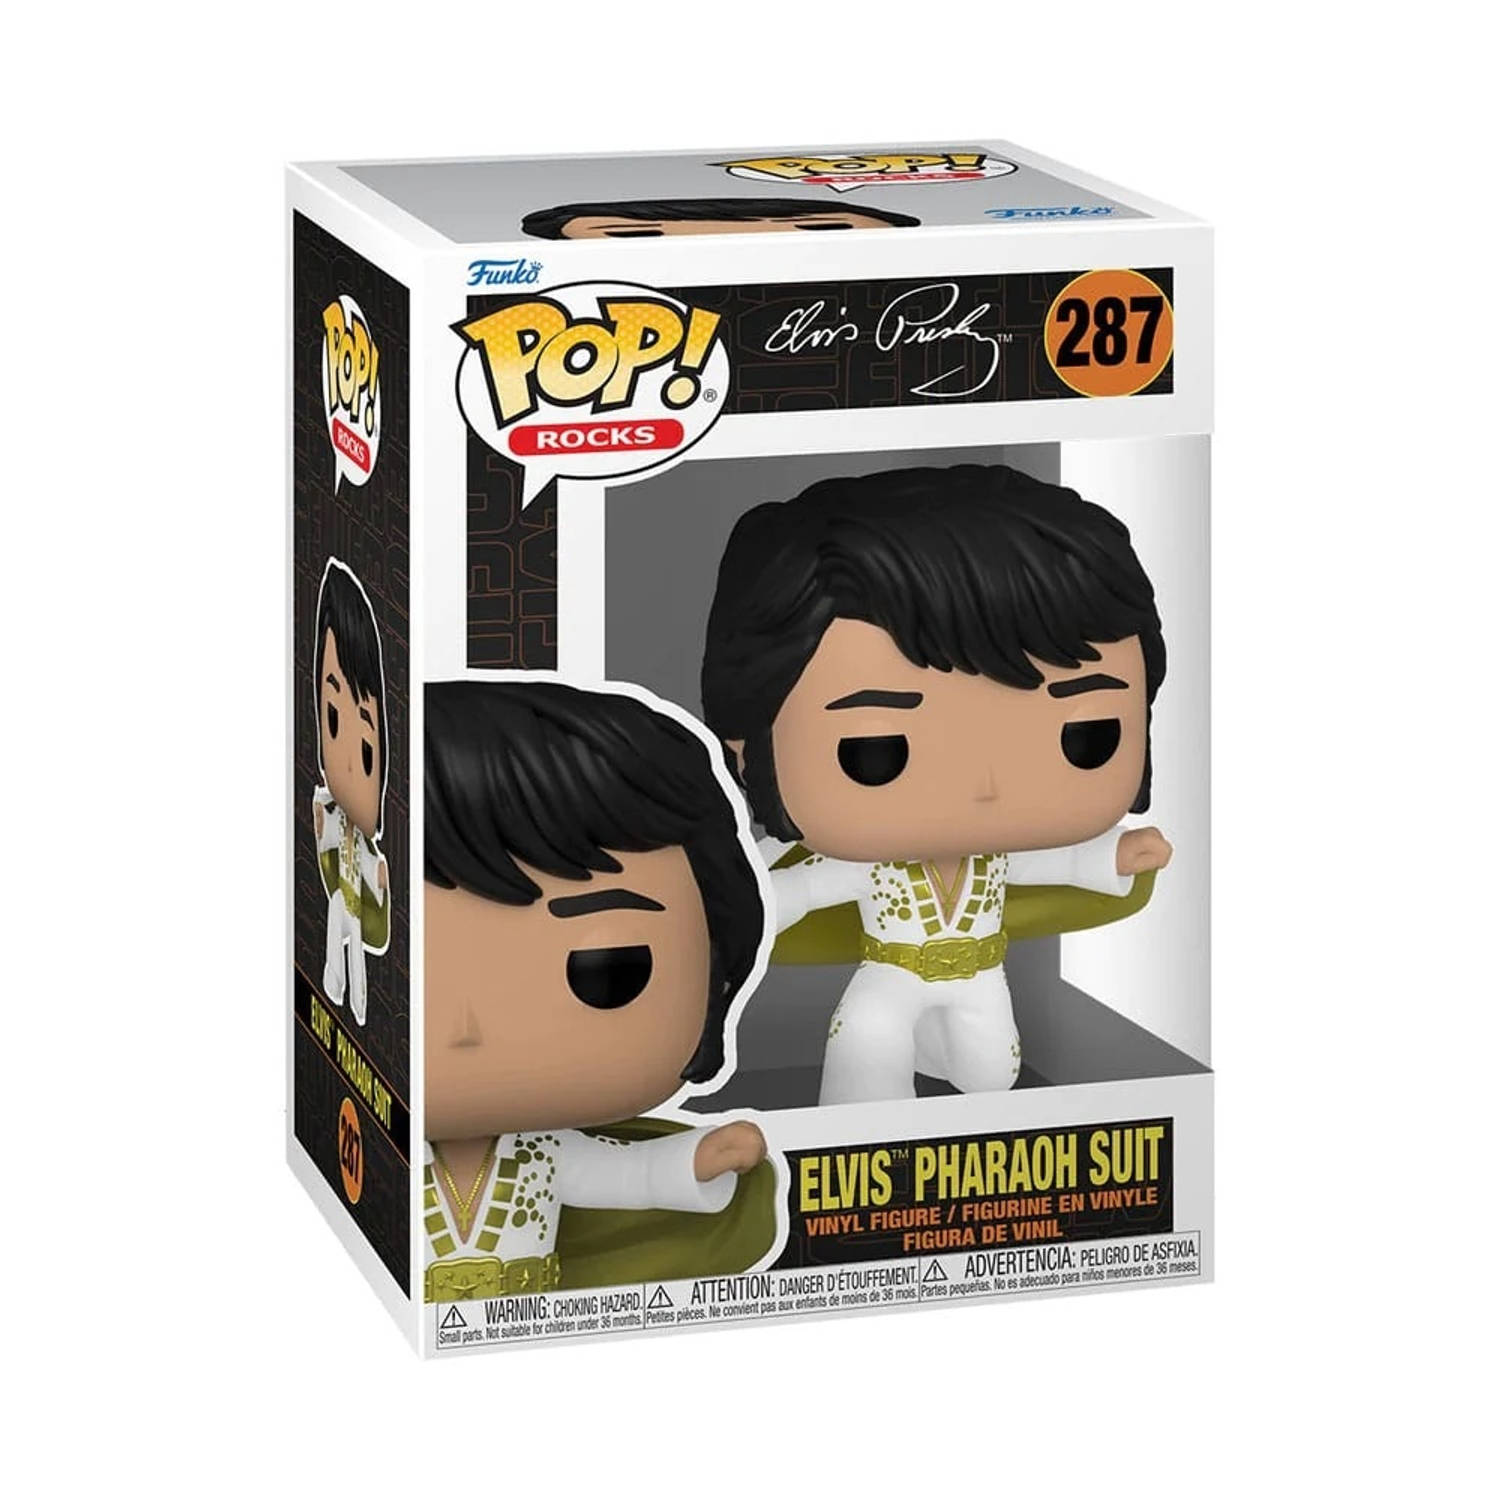 Pop Rocks: Elvis Presley Pharaoh Suit Funko Pop #287